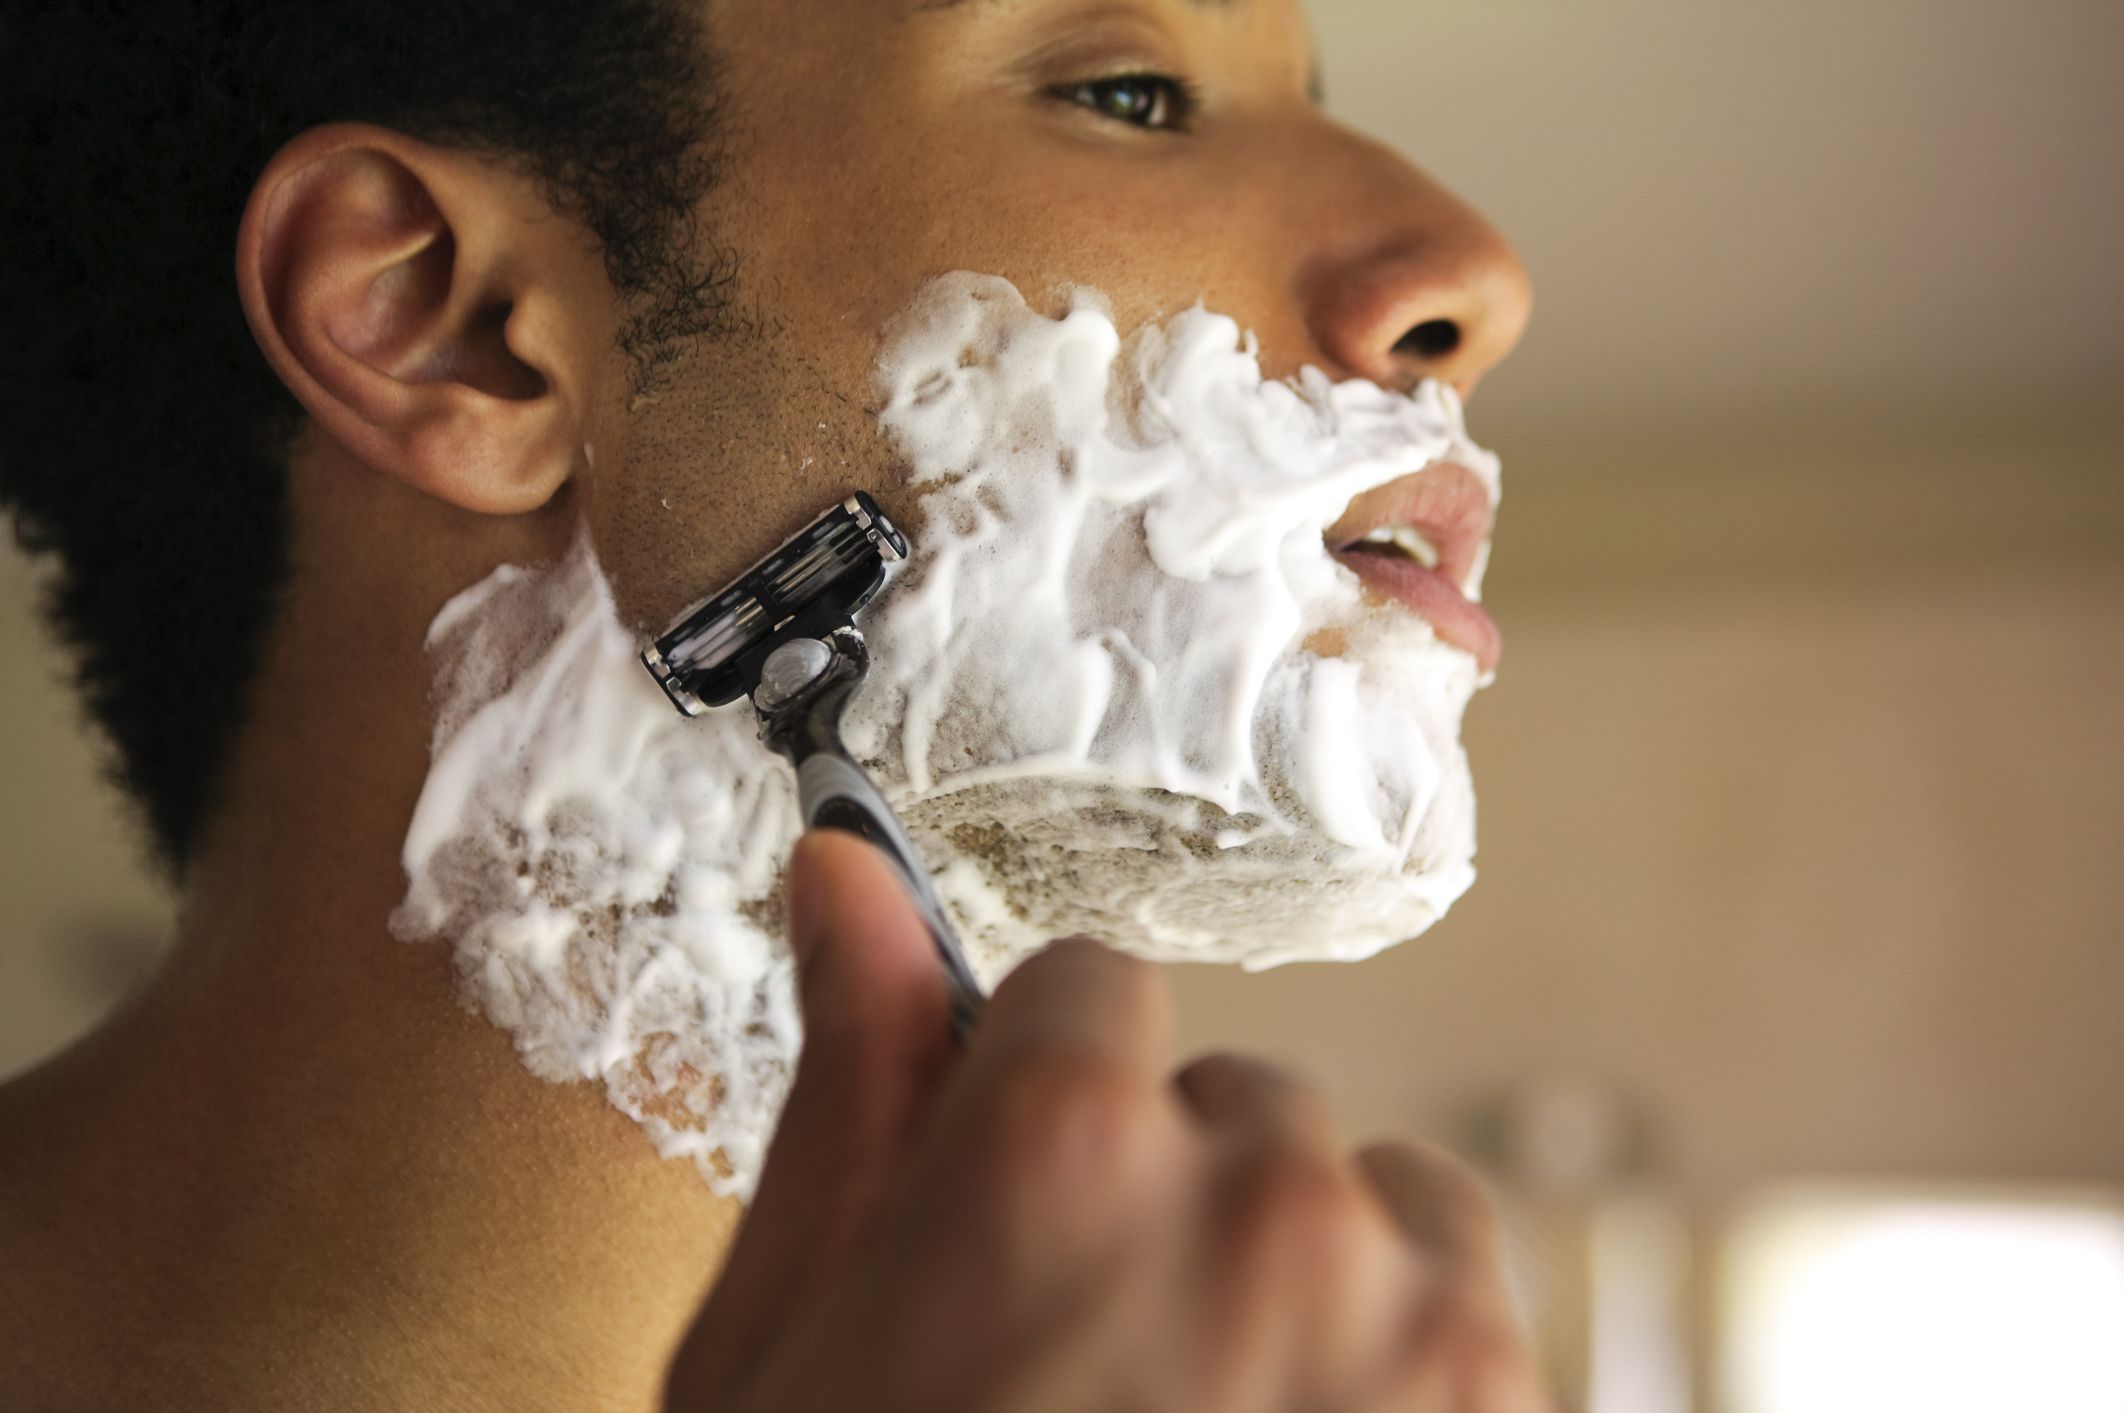 Бреют какое лицо. Пена джилет чистое бритье. Мужчина бреется. Пена для бритья для мужчин. Мужик в пену для бритья.